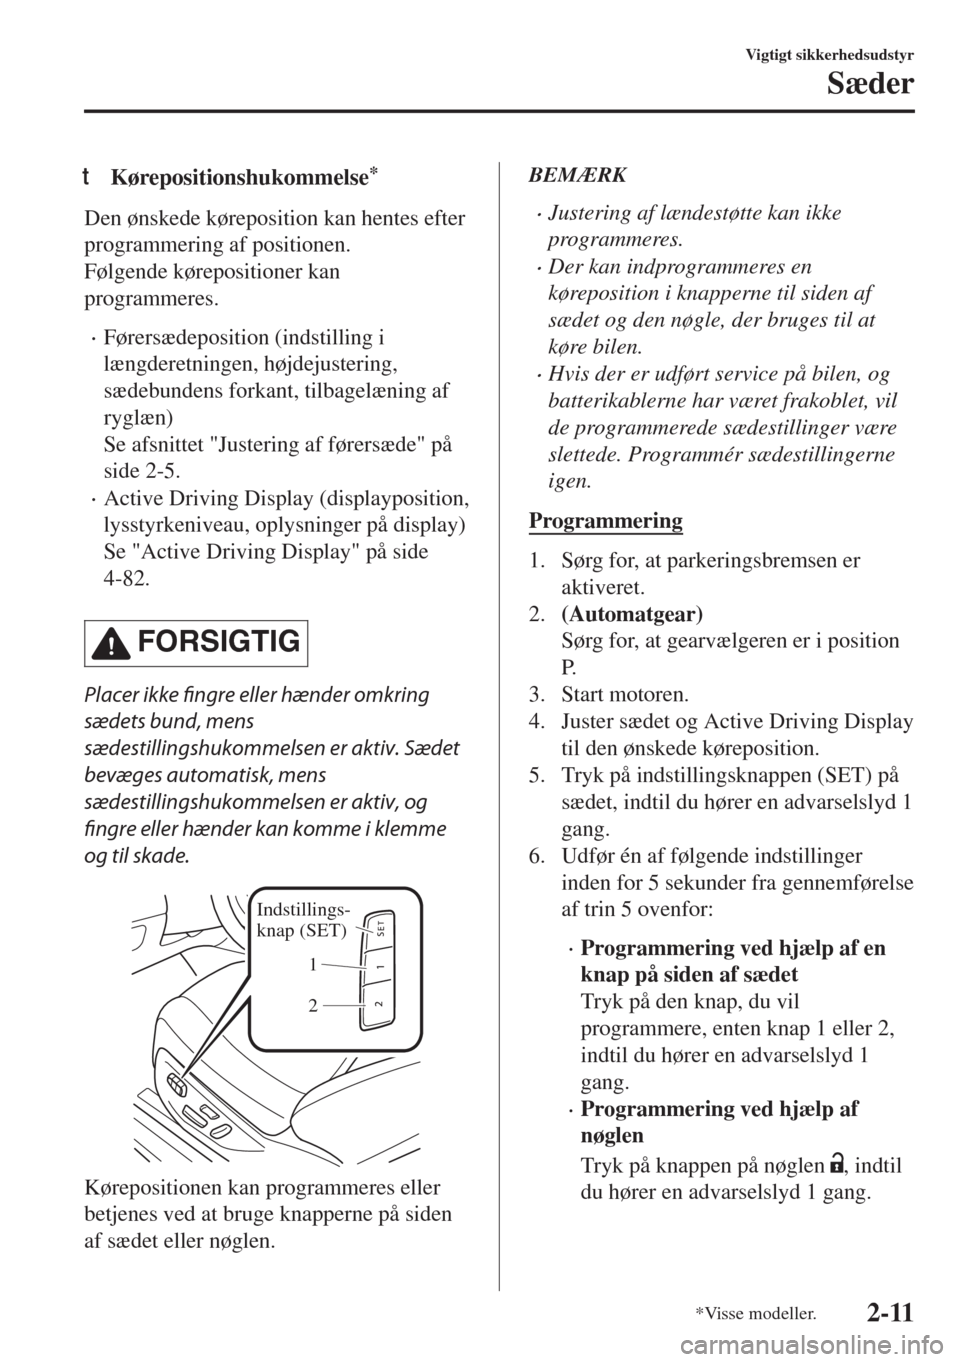 MAZDA MODEL 6 2018  Instruktionsbog (in Danish) tKørepositionshukommelse*
Den ønskede køreposition kan hentes efter
programmering af positionen.
Følgende kørepositioner kan
programmeres.
•Førersædeposition (indstilling i
længderetningen, 